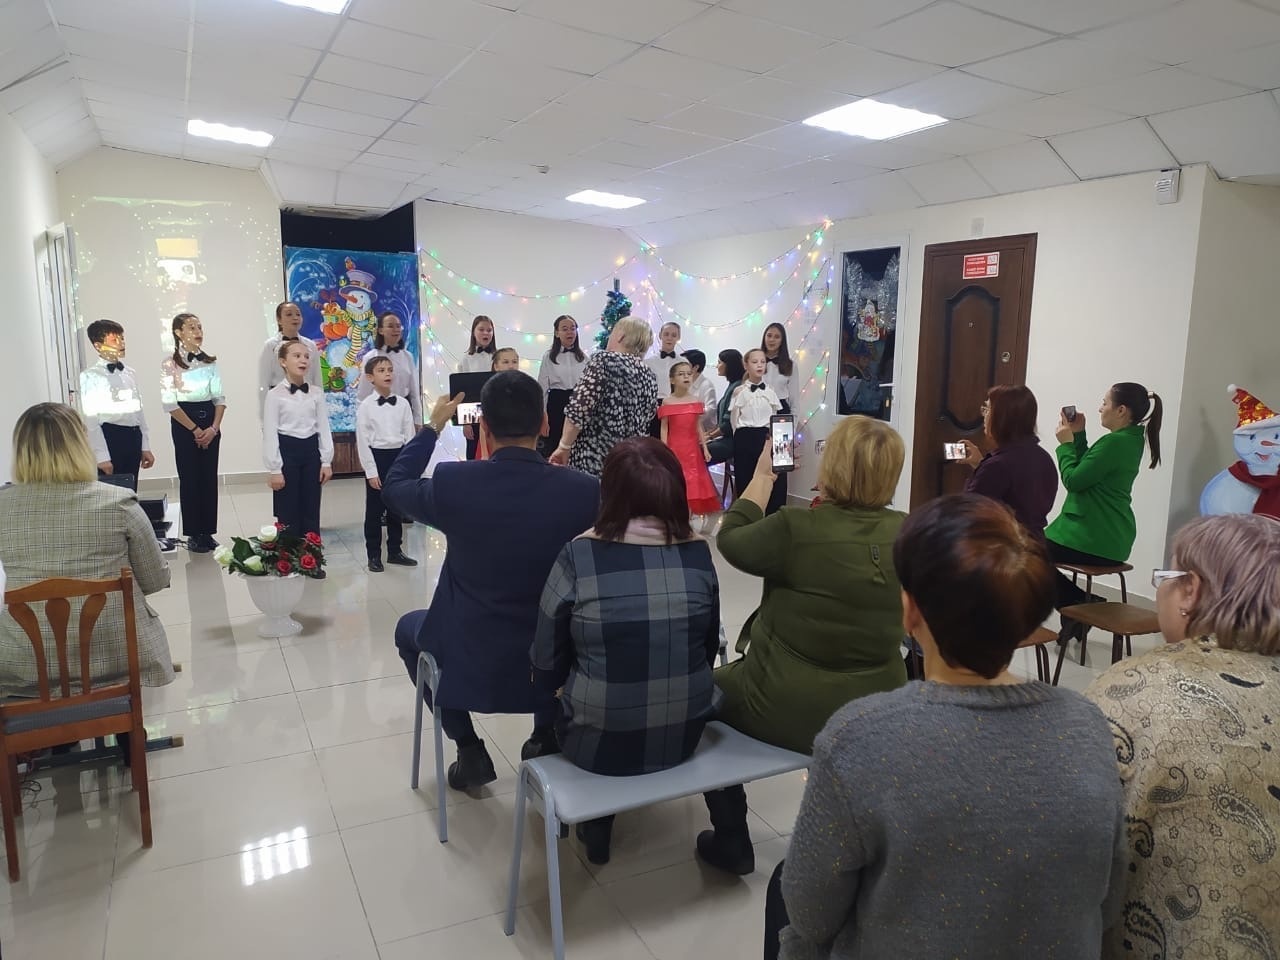 В Стерлитамакском районе состоялся концерт учащихся вокально-хорового отделения Детской школы искусств